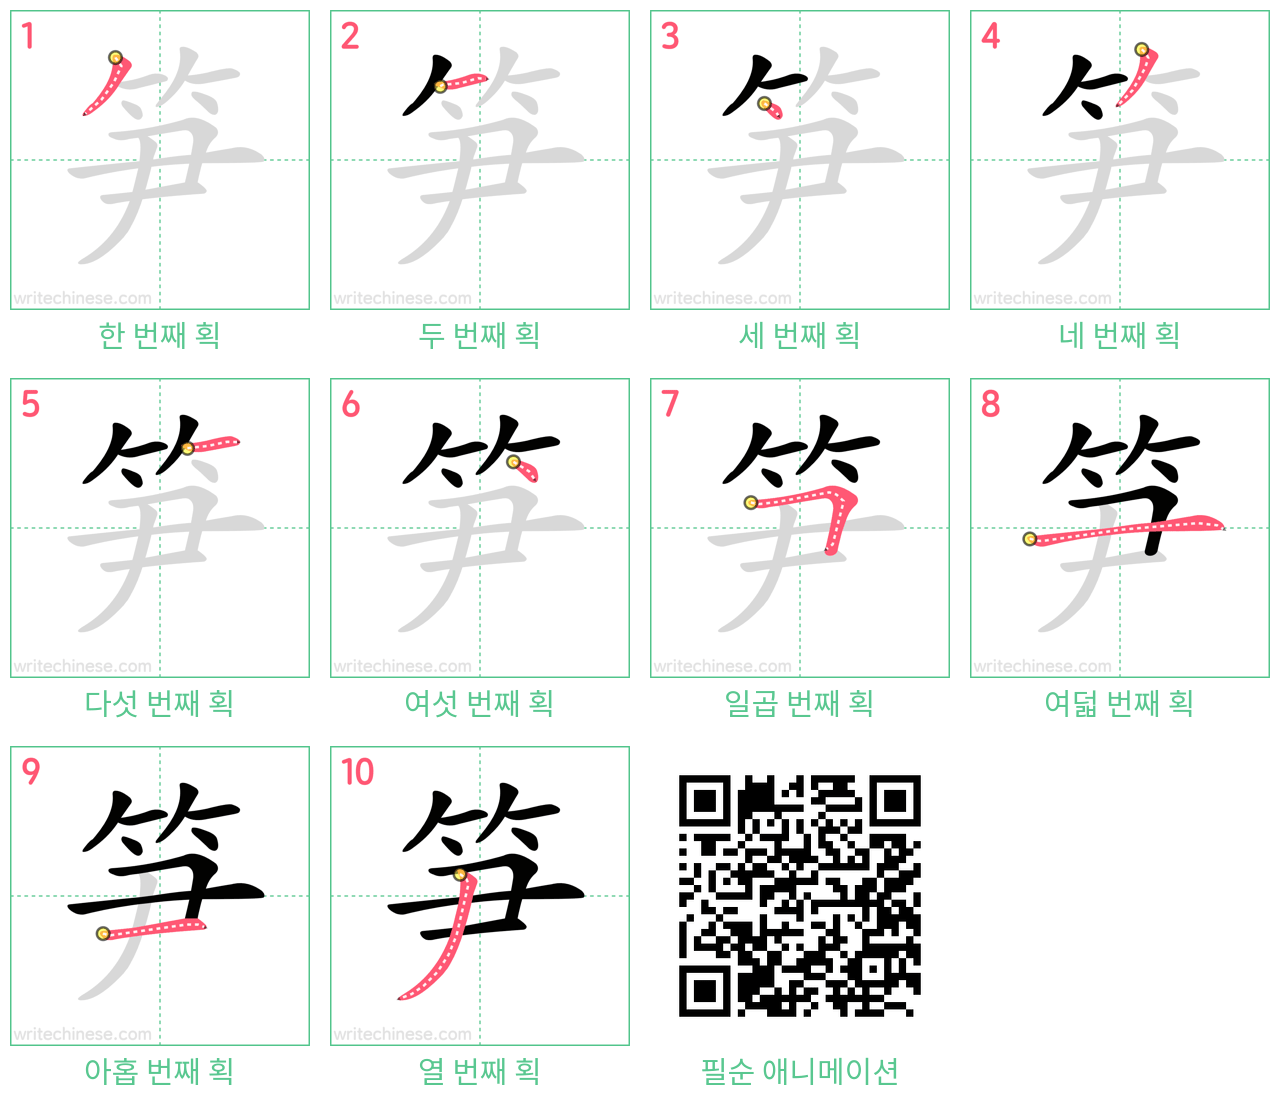 笋 step-by-step stroke order diagrams